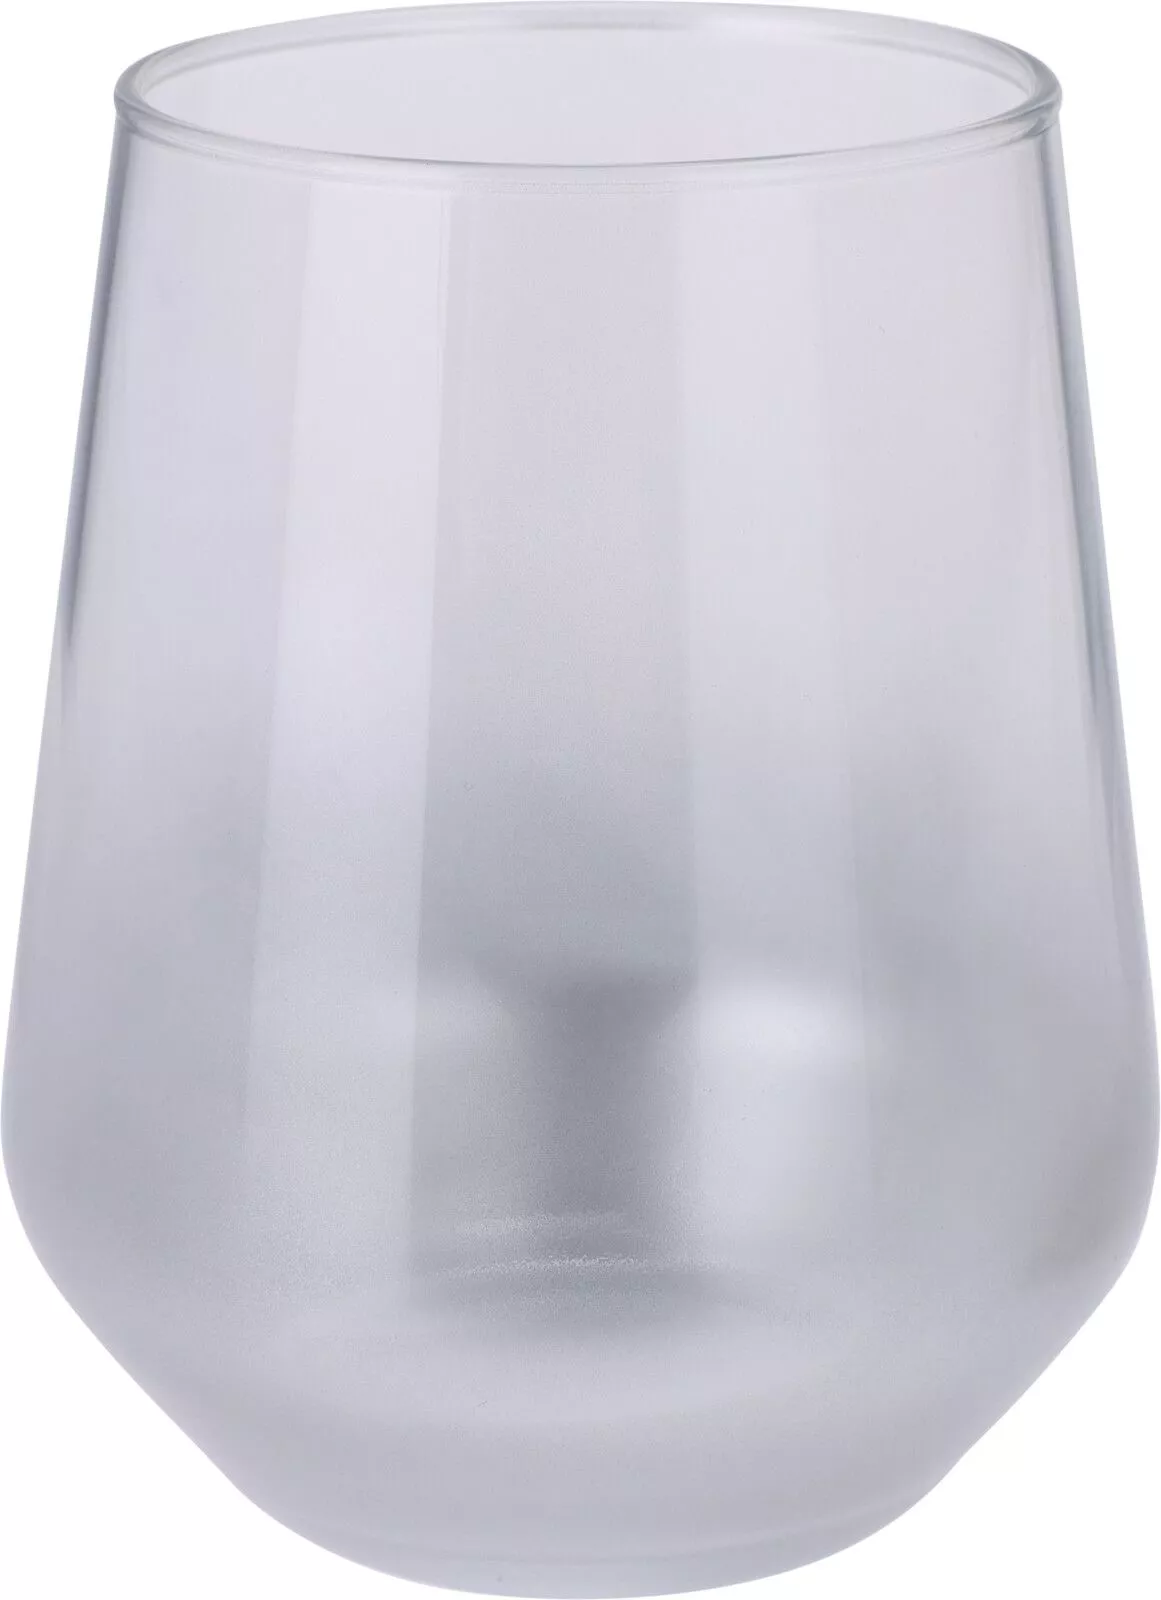 Trinkglas silber 425ml NEROLI